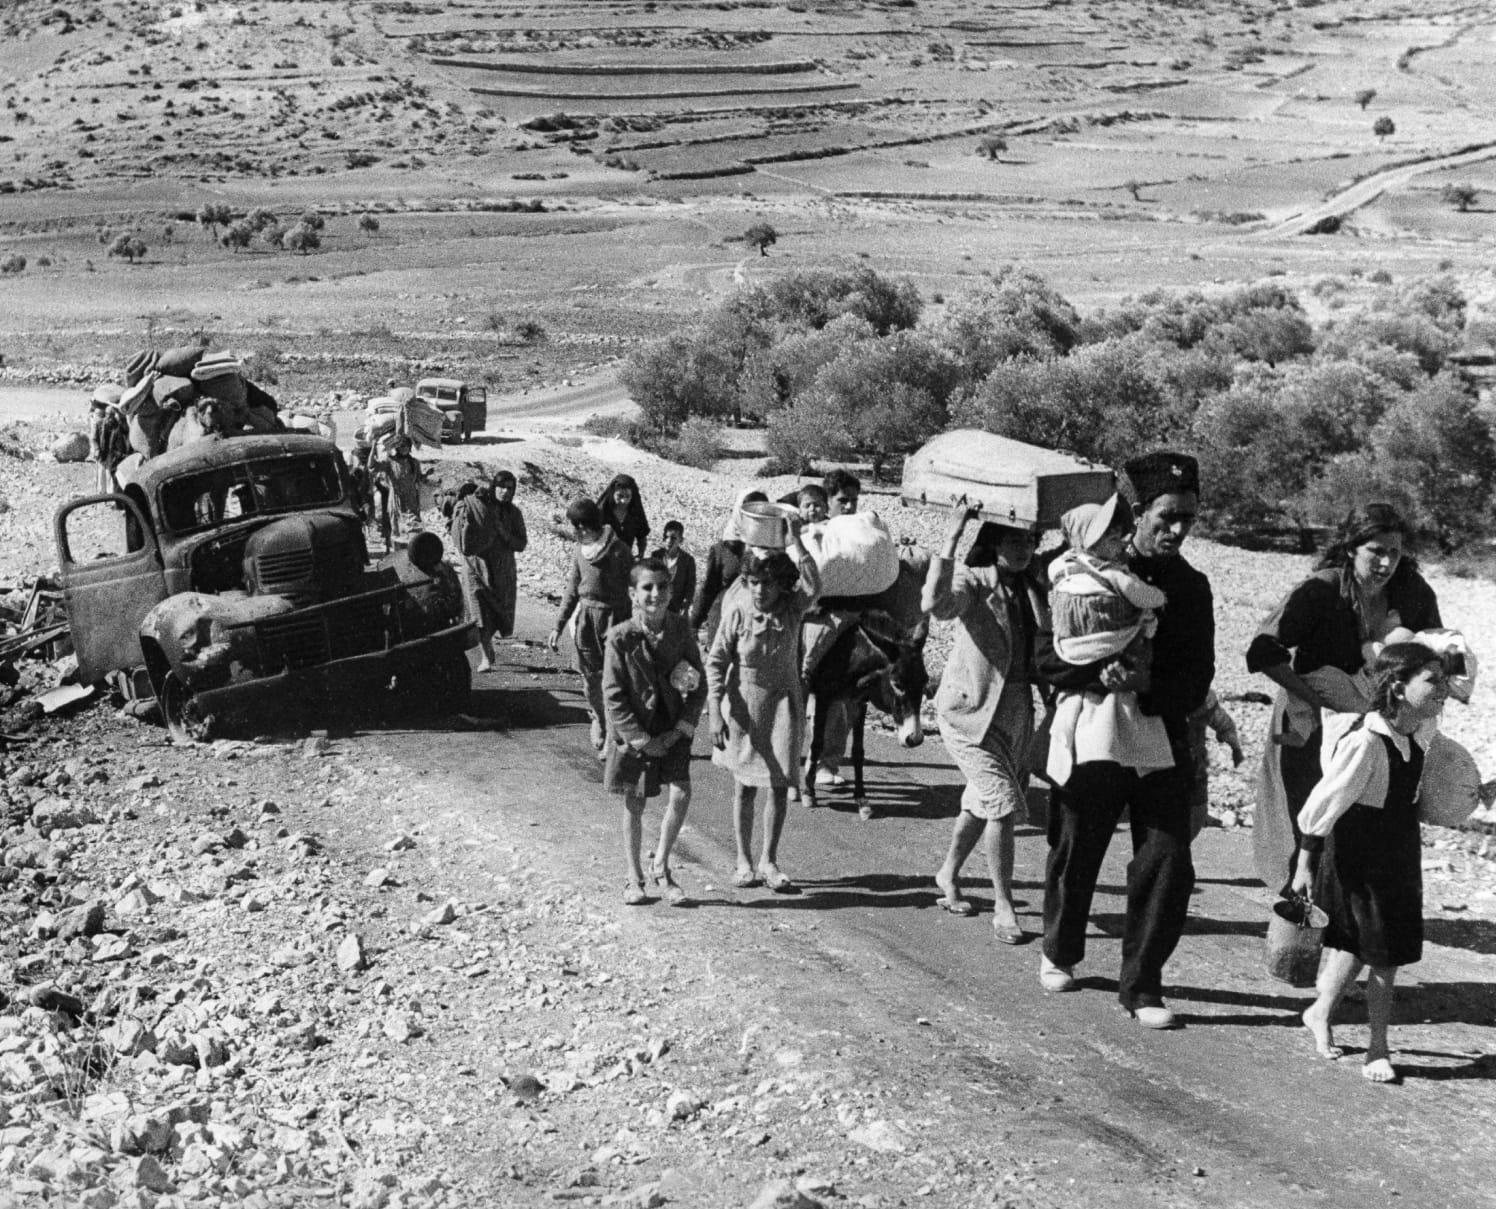 Refugiados caminhando durante o Nakba.